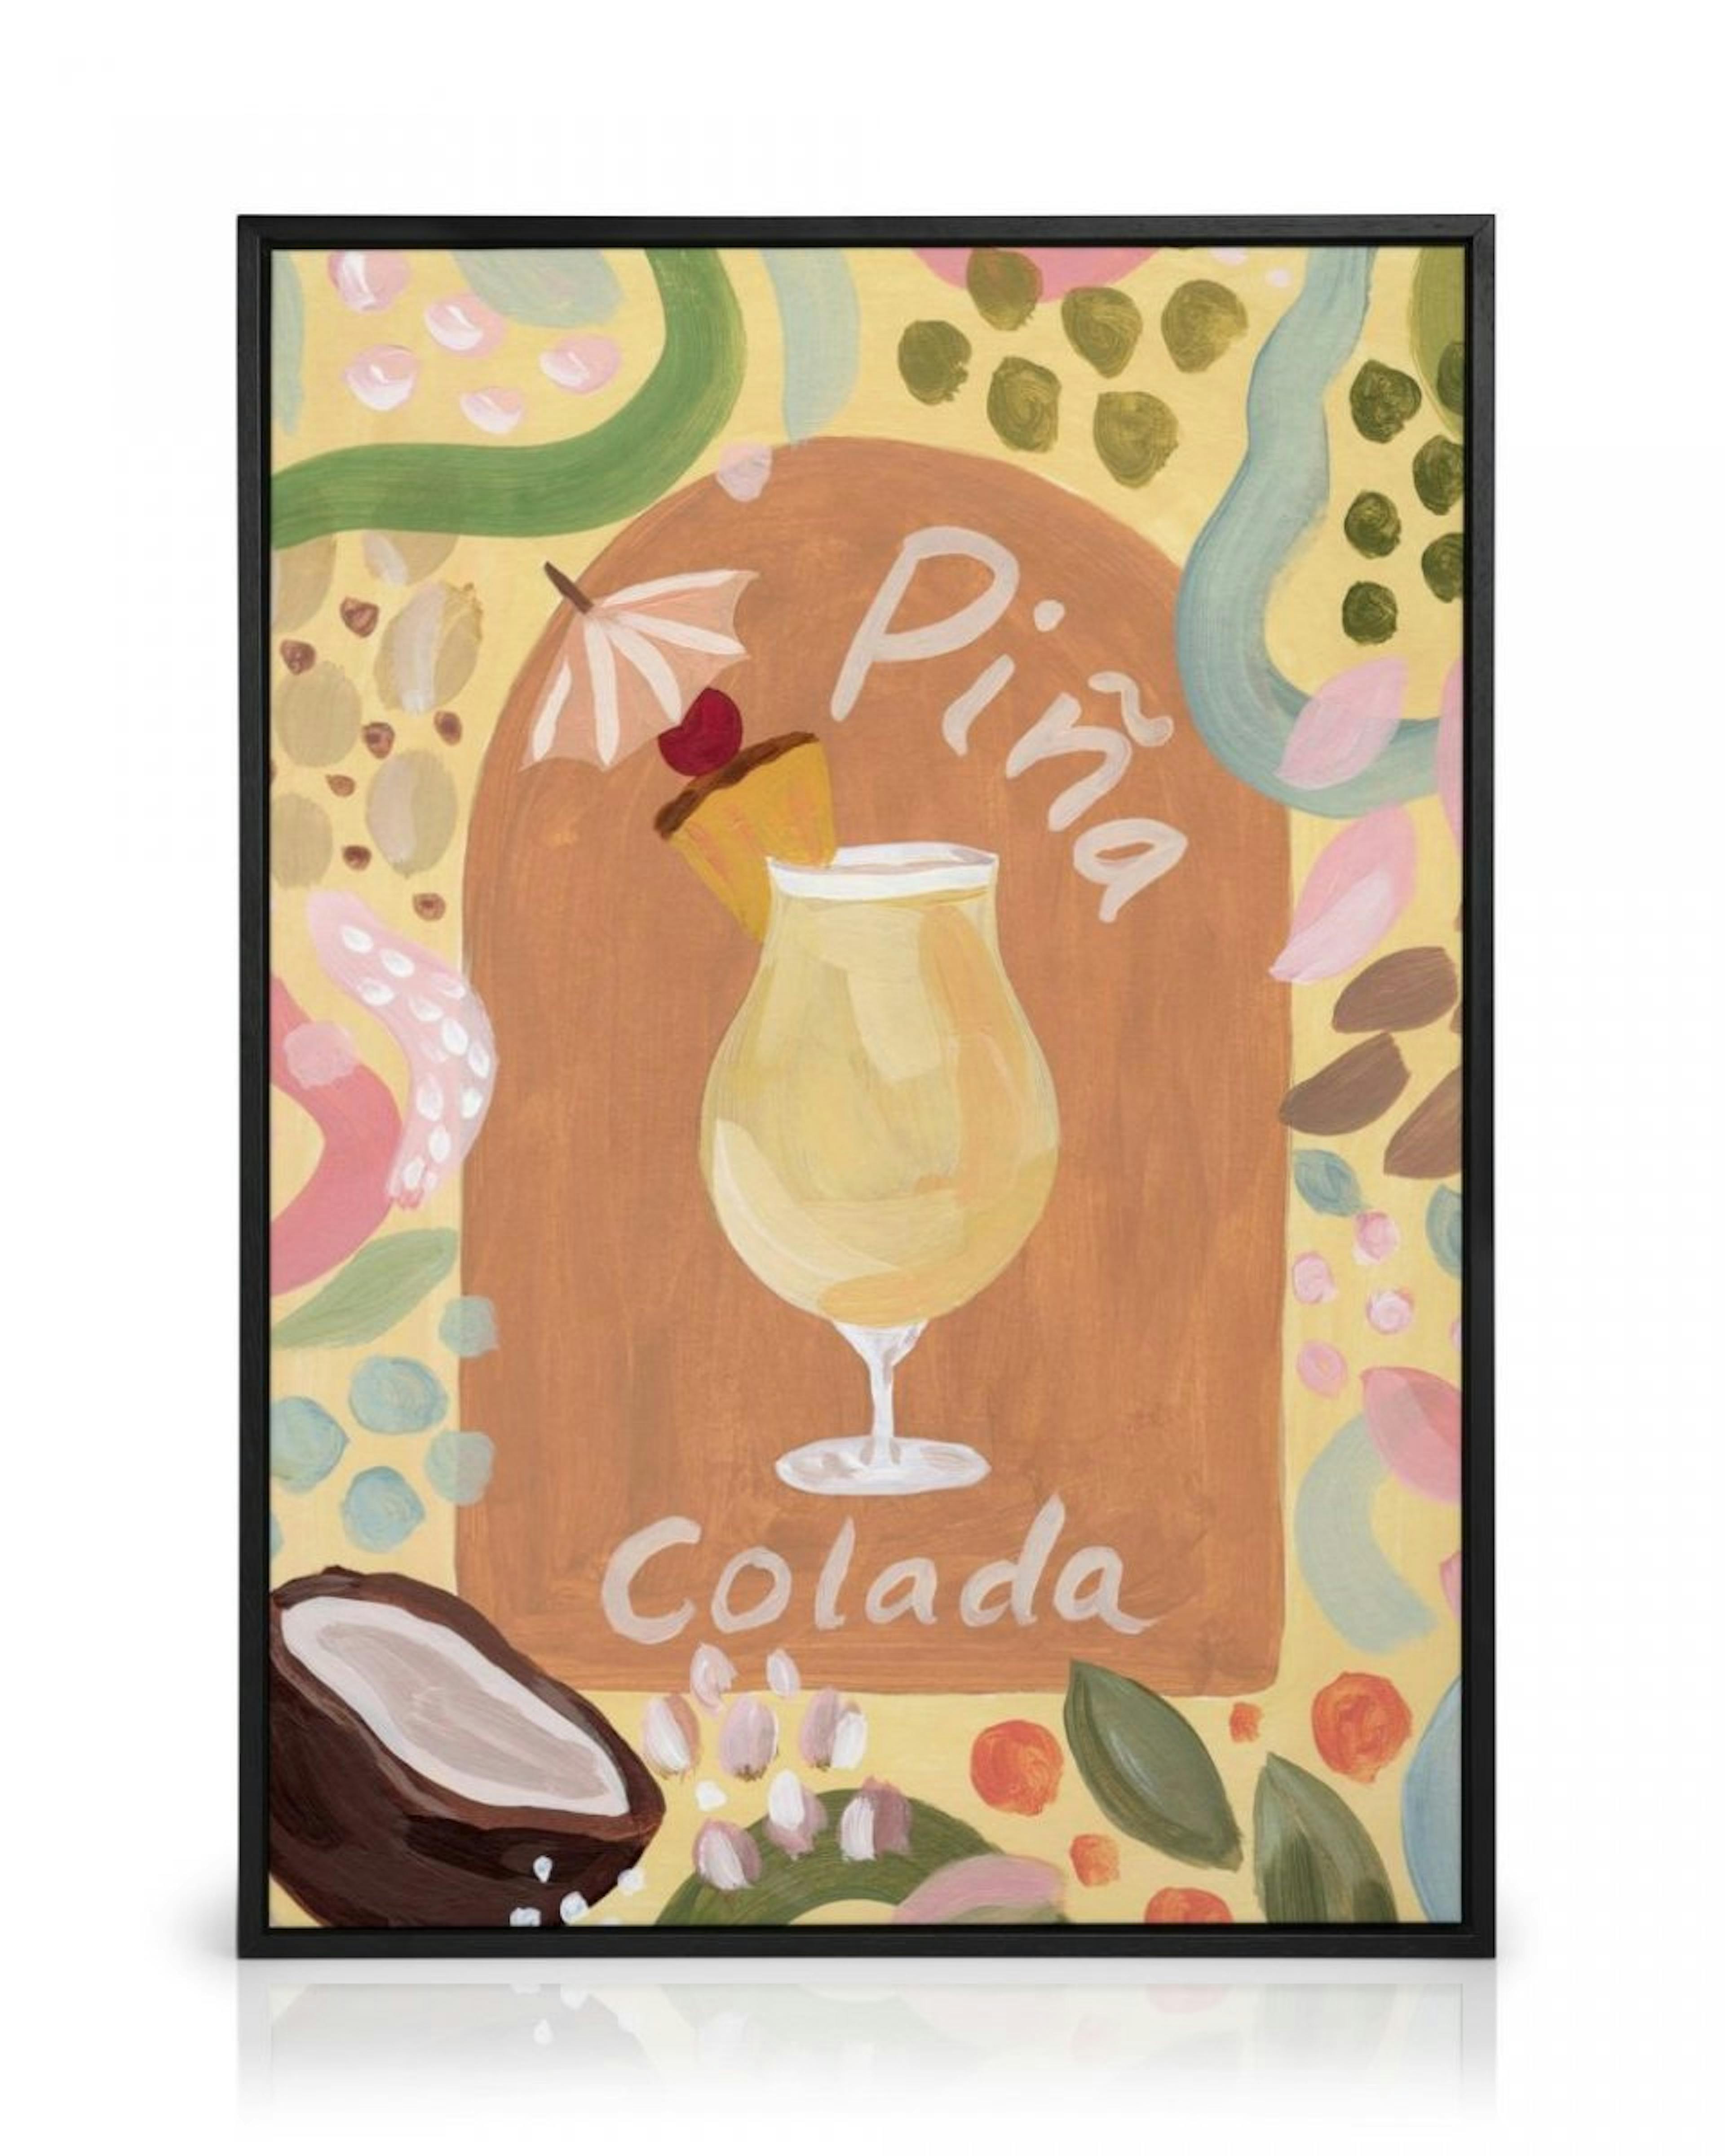 One Piña Colada, Please Canvas